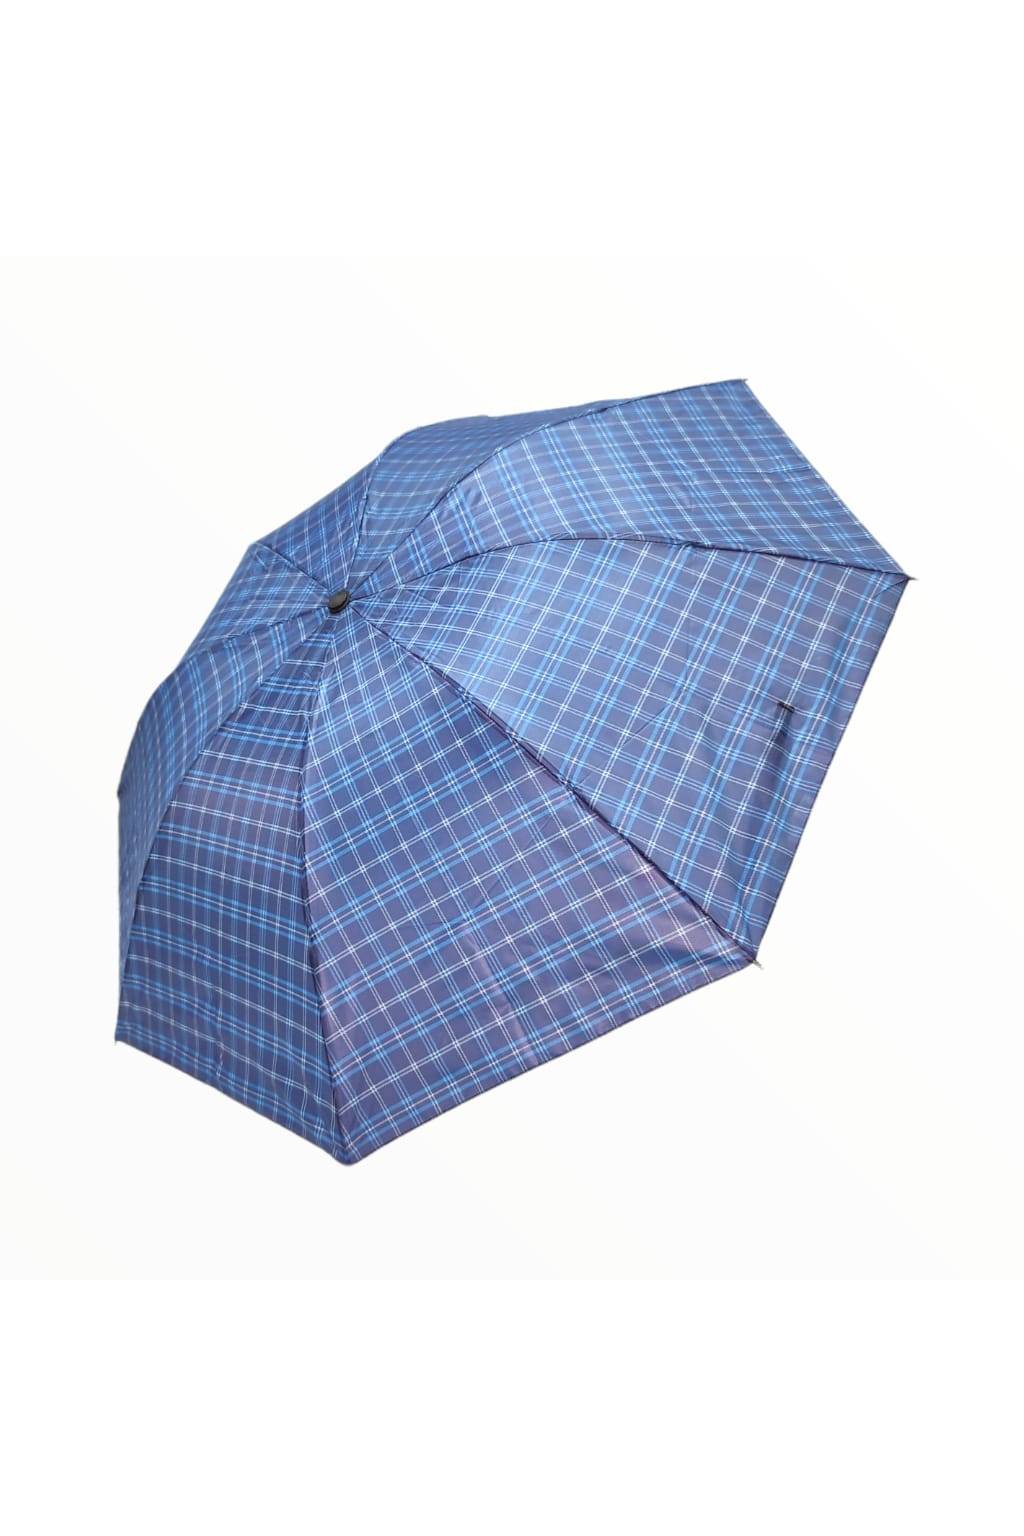 Vetruodolný dáždnik KARO modrý www.kabelky vypredaj (1)